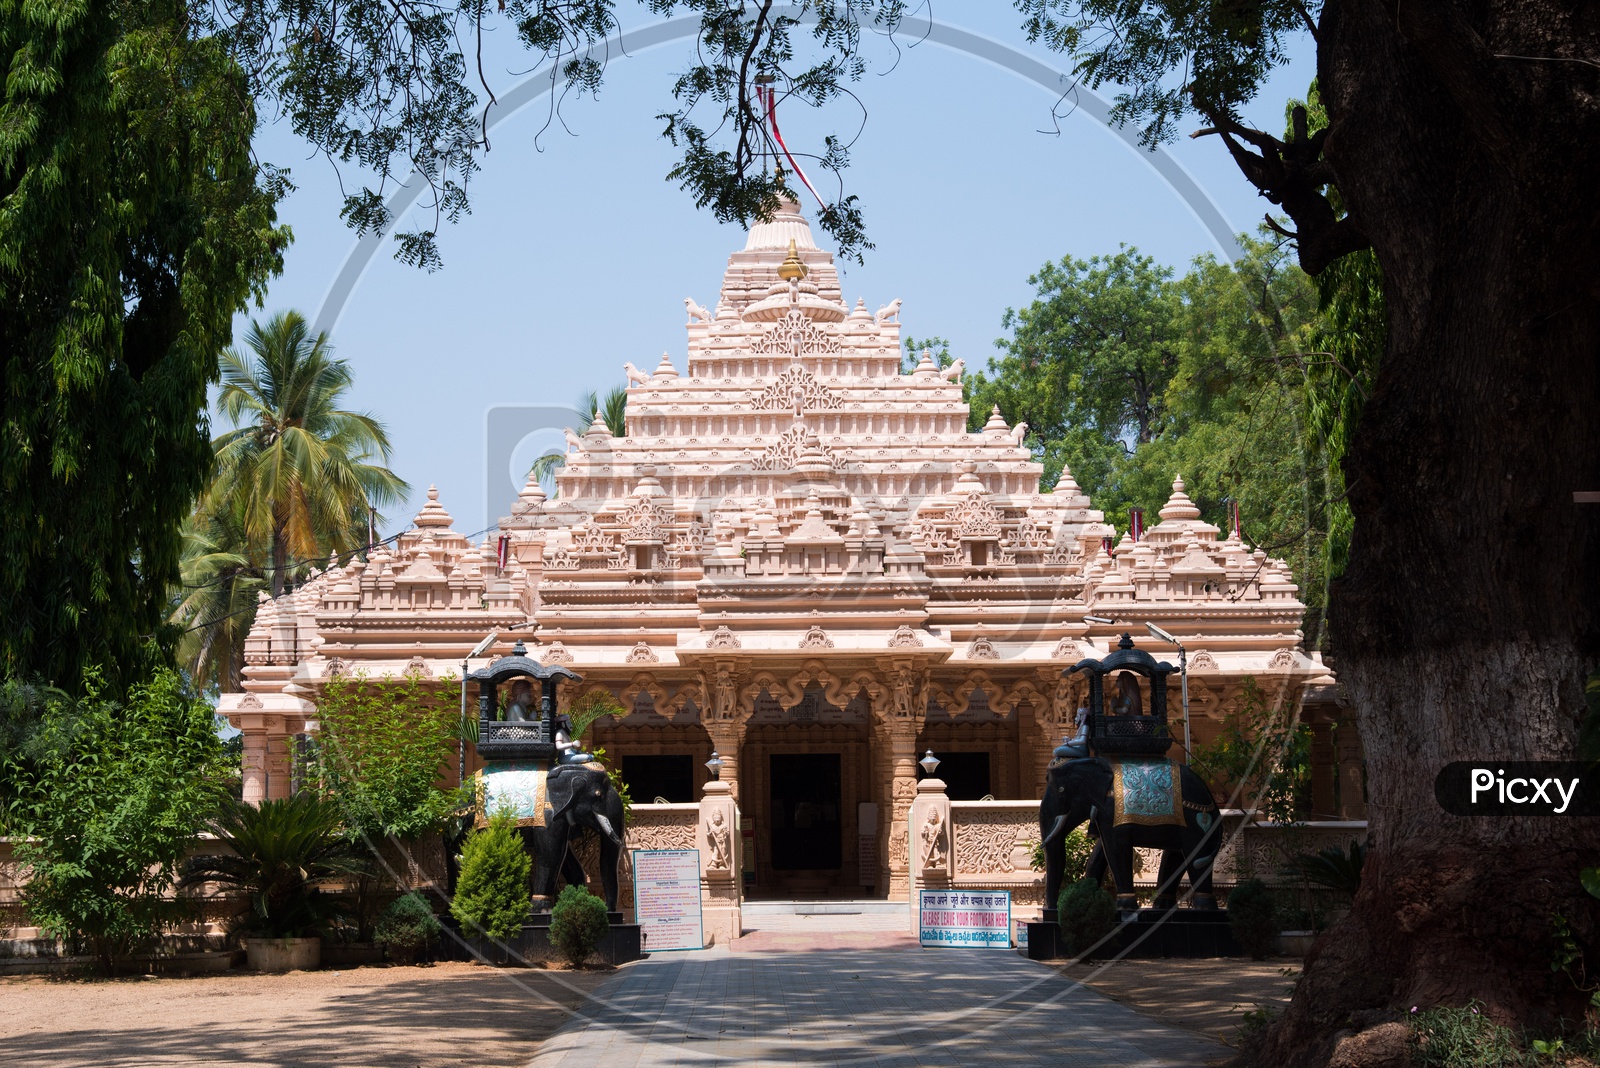 Kolanupaka Jain Temple